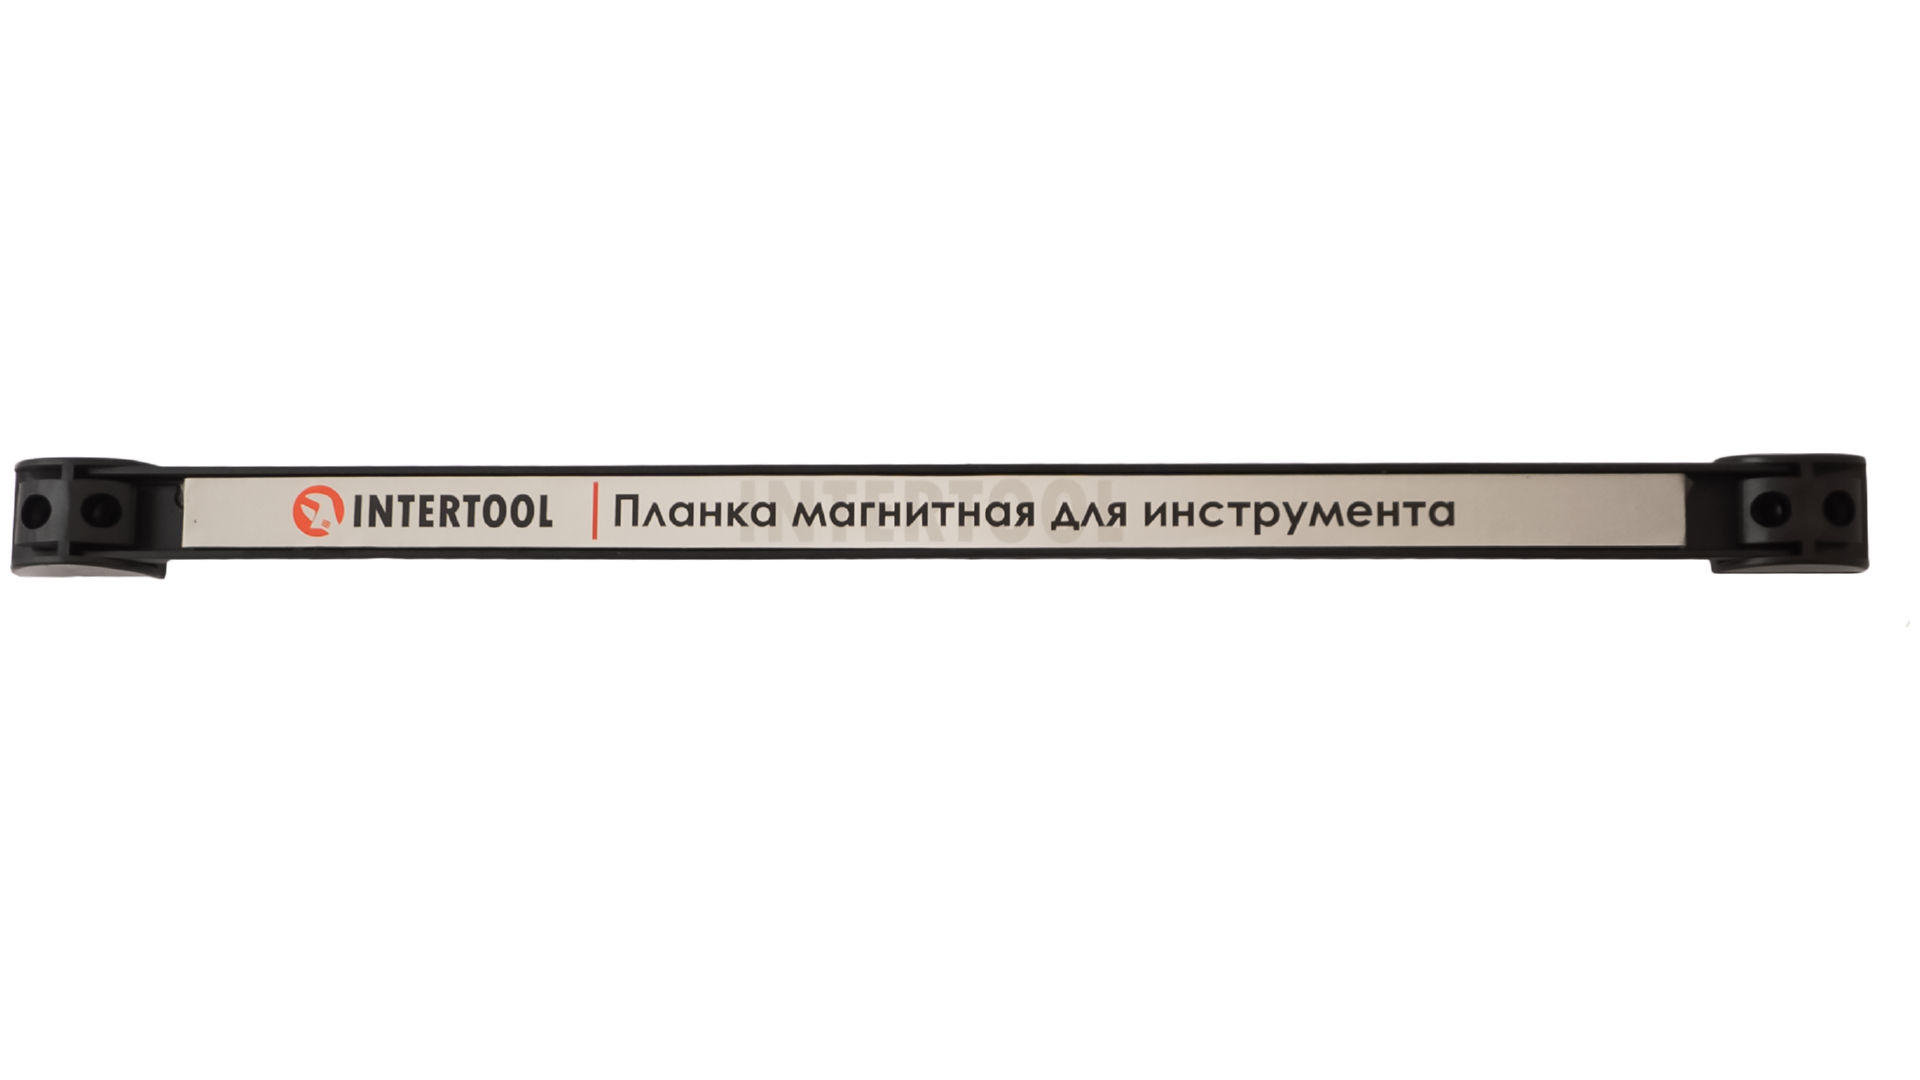 Планка магнитная для инструмента Intertool - 605 мм x 13 кг 5